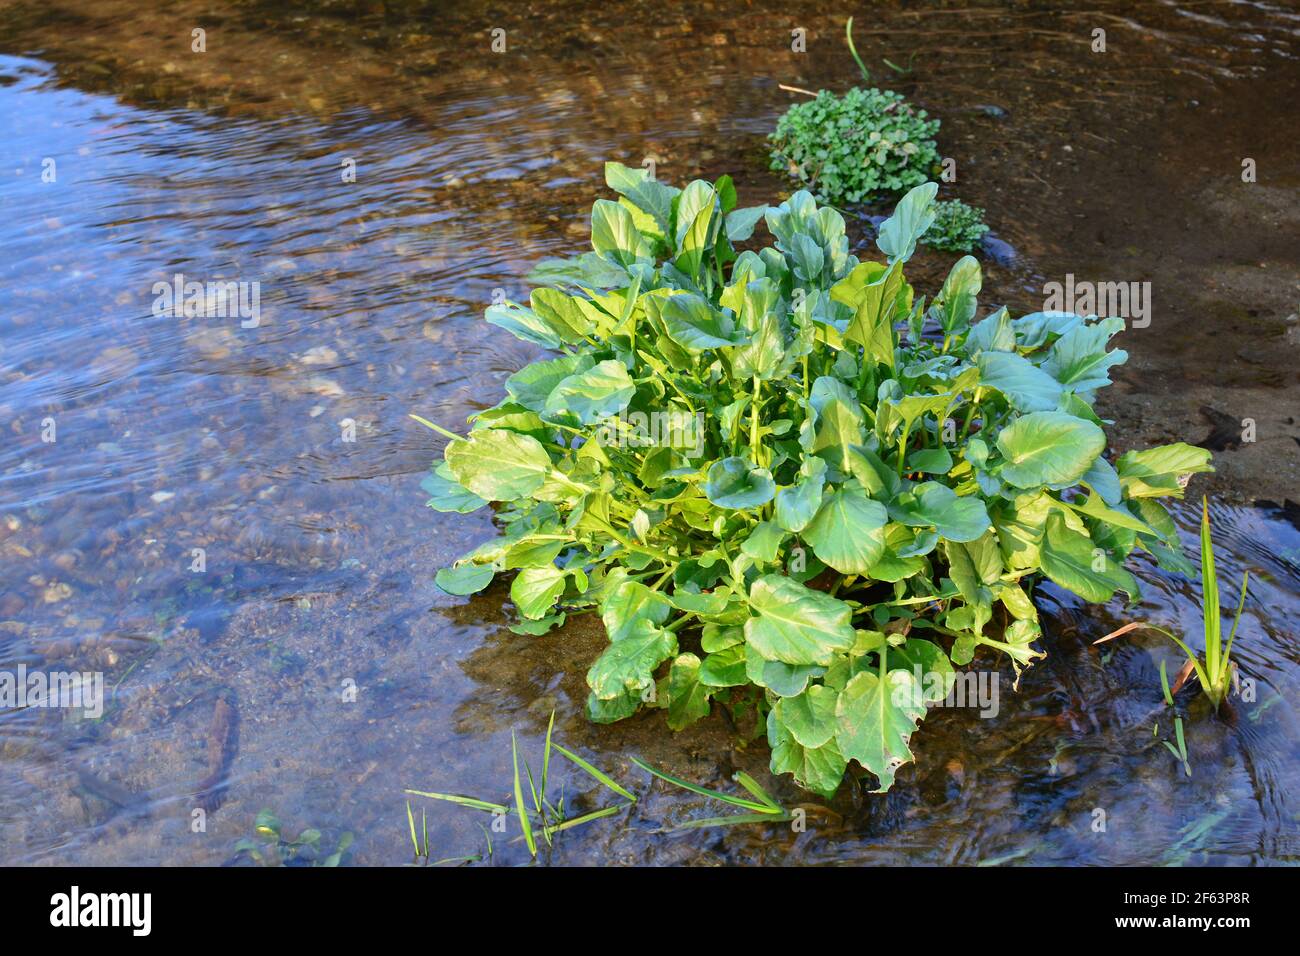 FICAria verna, anciennement Ranunculus ficaria, communément connu sous le nom de célandine ou pilewort dans les eaux peu profondes du ruisseau de montagne au début du printemps Banque D'Images